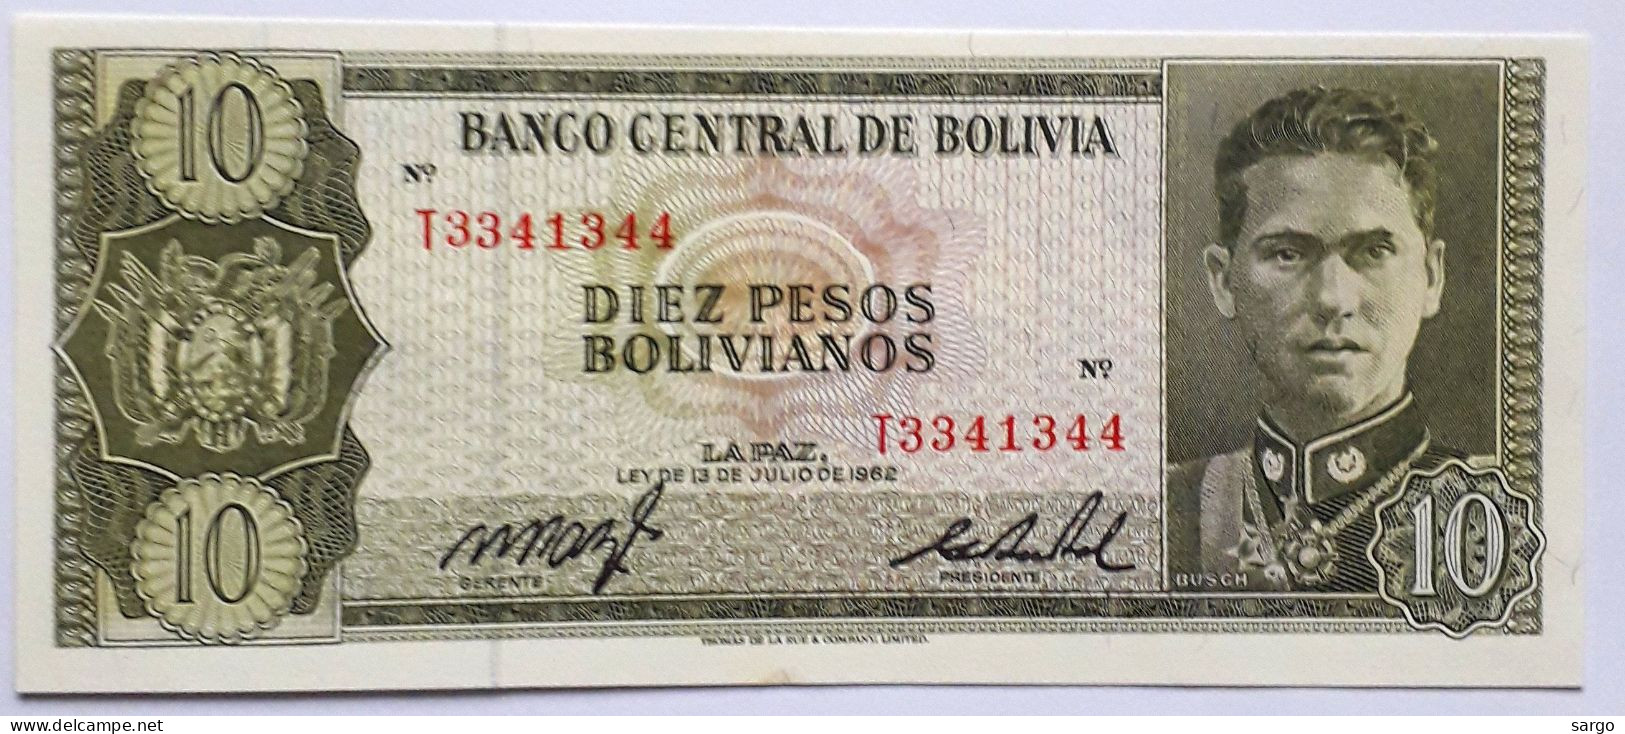 BOLIVIA - 10 PESOS  BOLIVIANOS  - P 154  (1962) - UNC - BANKNOTES - PAPER MONEY - CARTAMONETA - - Bolivie